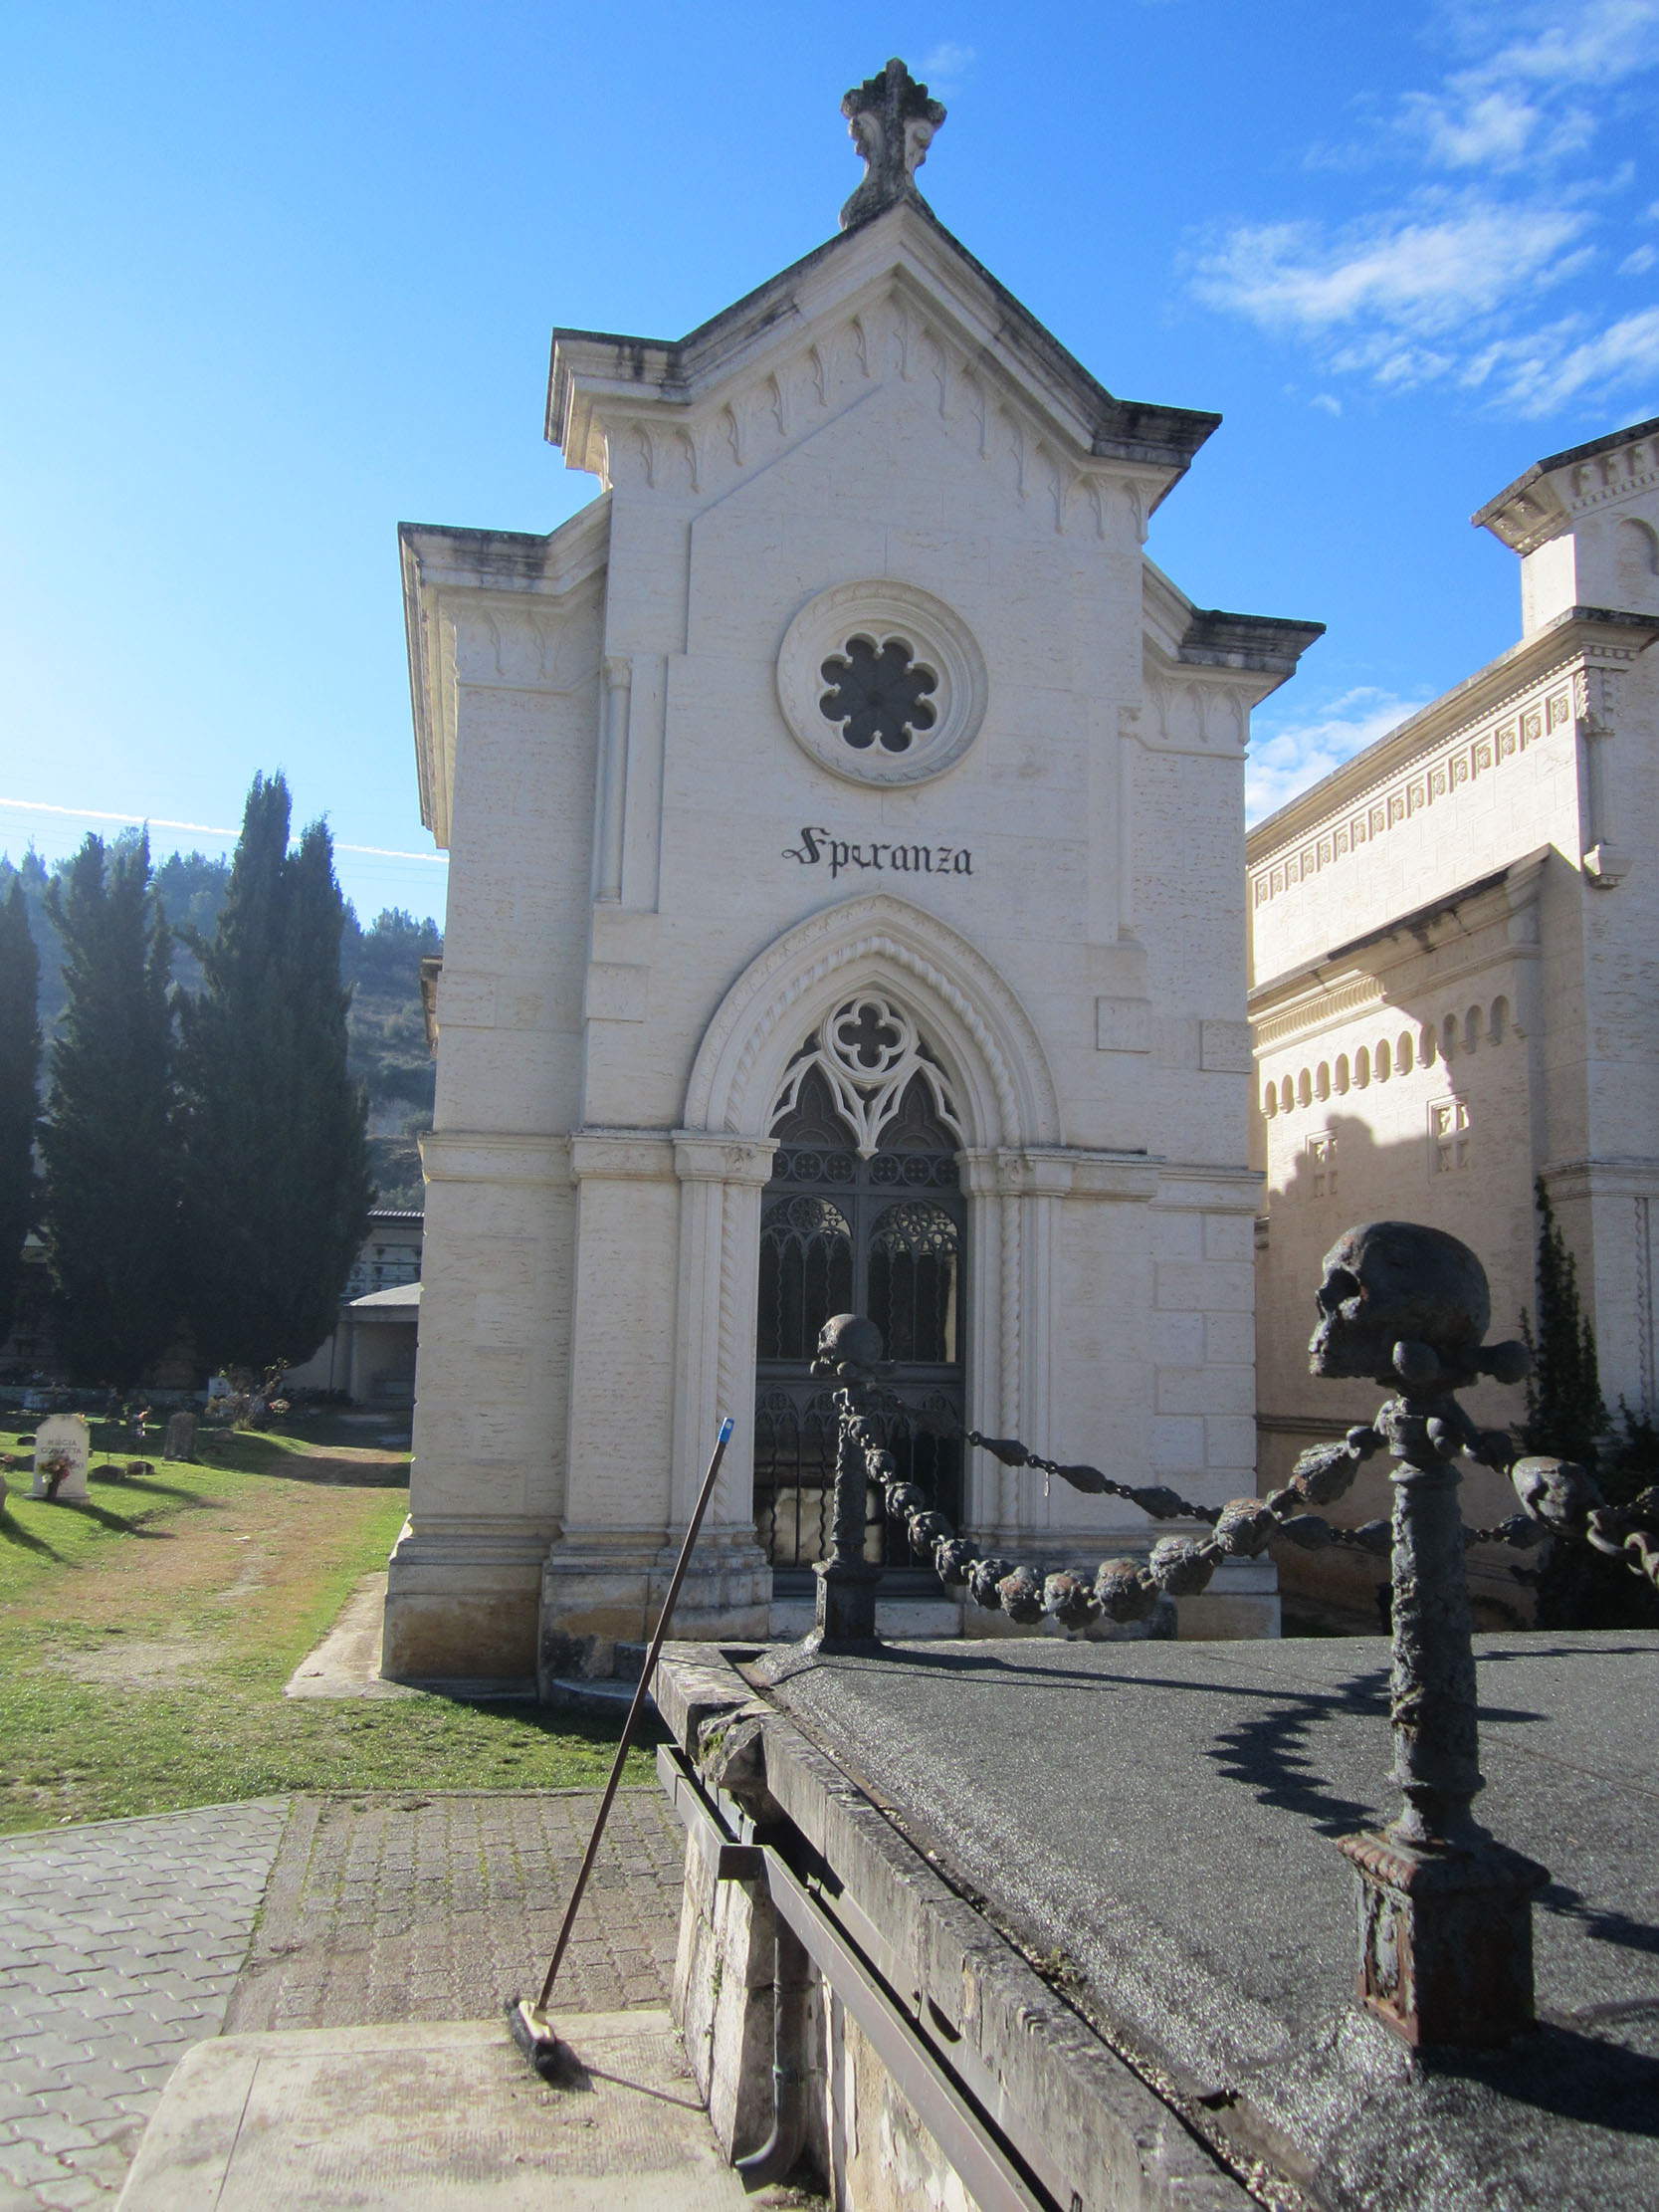 Cappella cimiteriale Speranza (cimitero, monumentale) - Sulmona (AQ) 